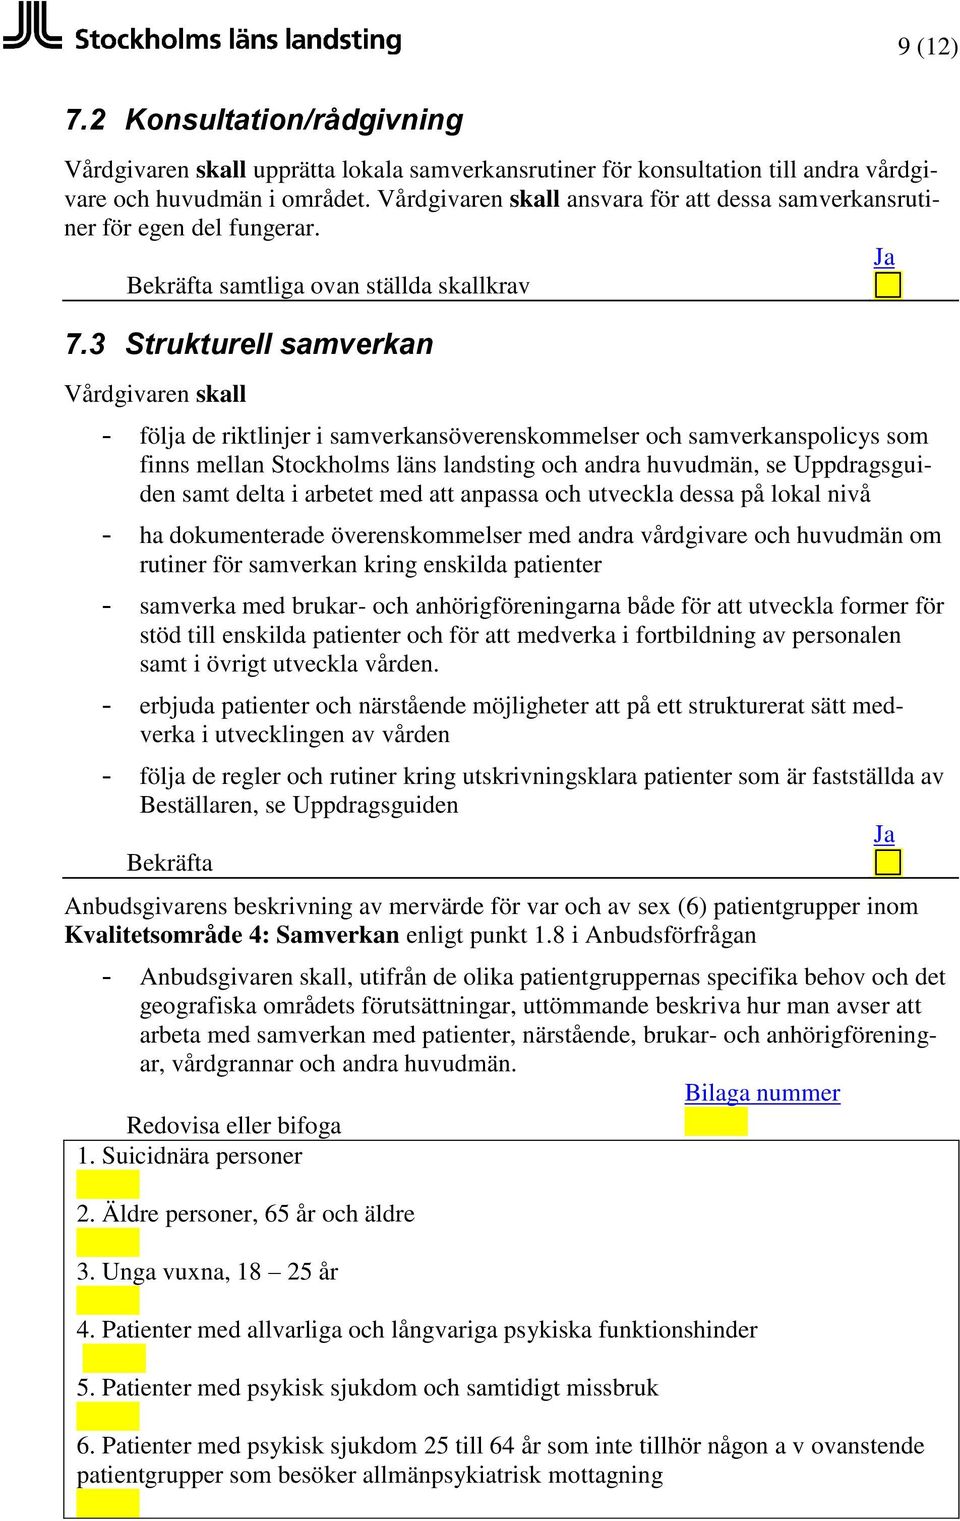 3 Strukturell samverkan - följa de riktlinjer i samverkansöverenskommelser och samverkanspolicys som finns mellan Stockholms läns landsting och andra huvudmän, se Uppdragsguiden samt delta i arbetet